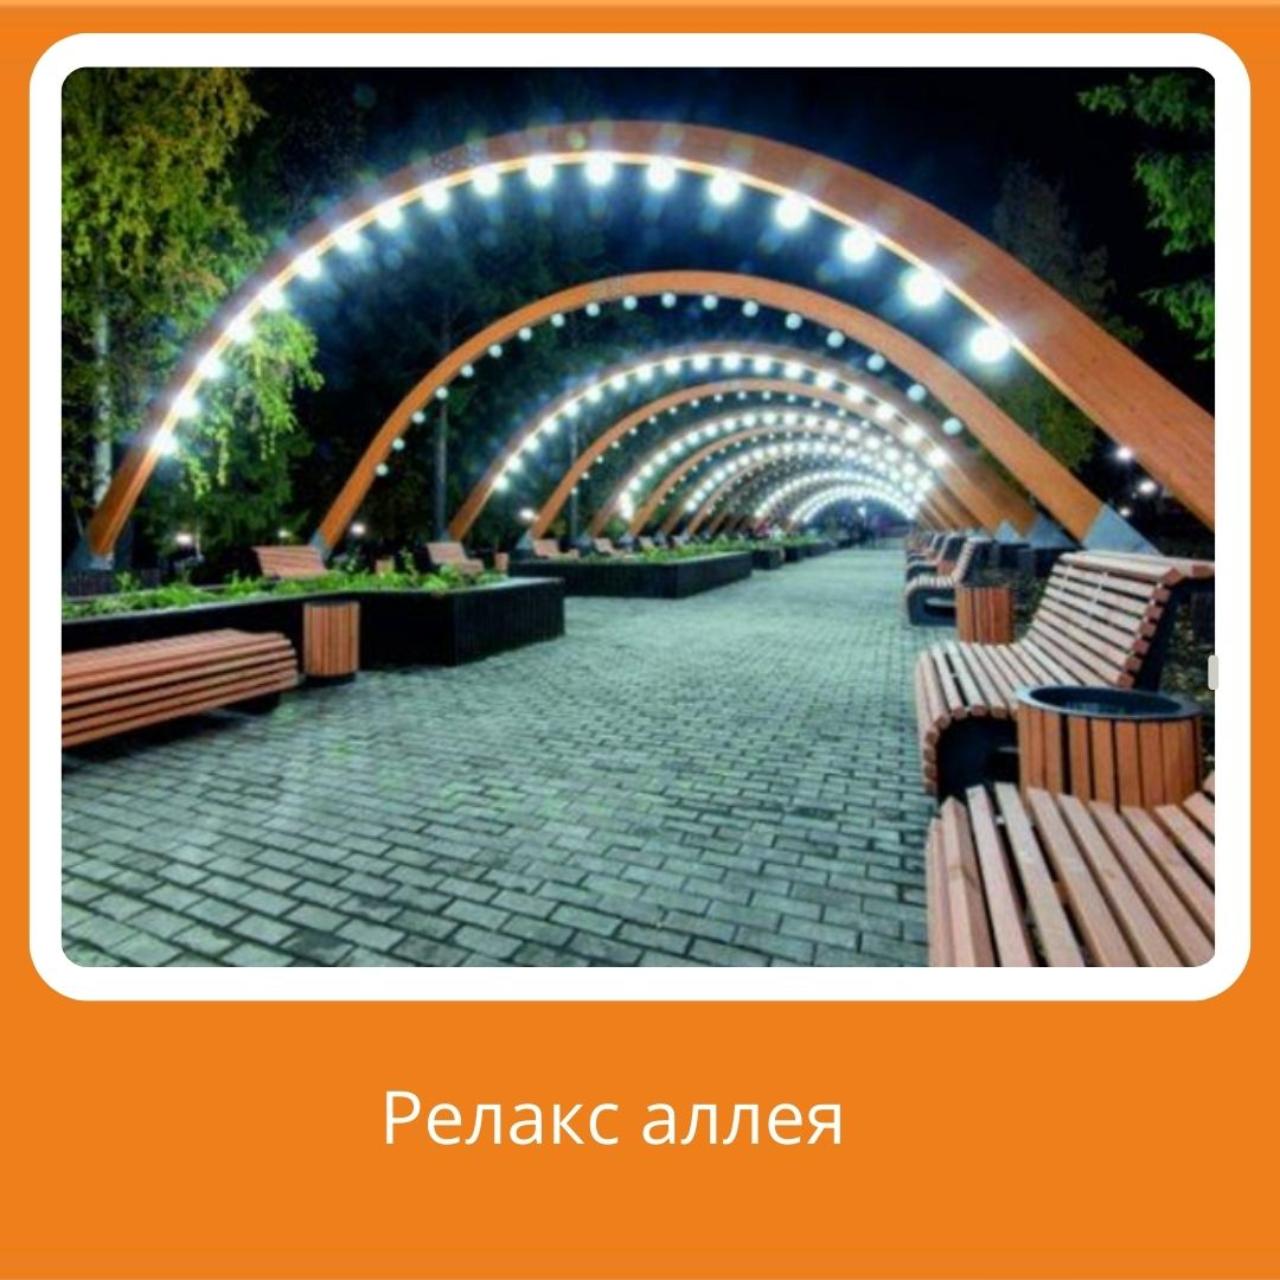 Совершенно новую зону отдыха можно открыть вдоль вновь построенных домов по улице Донентаева-Камзина. Такая зона отдыха позволит совершать вечерние прогулки в этой части города. 